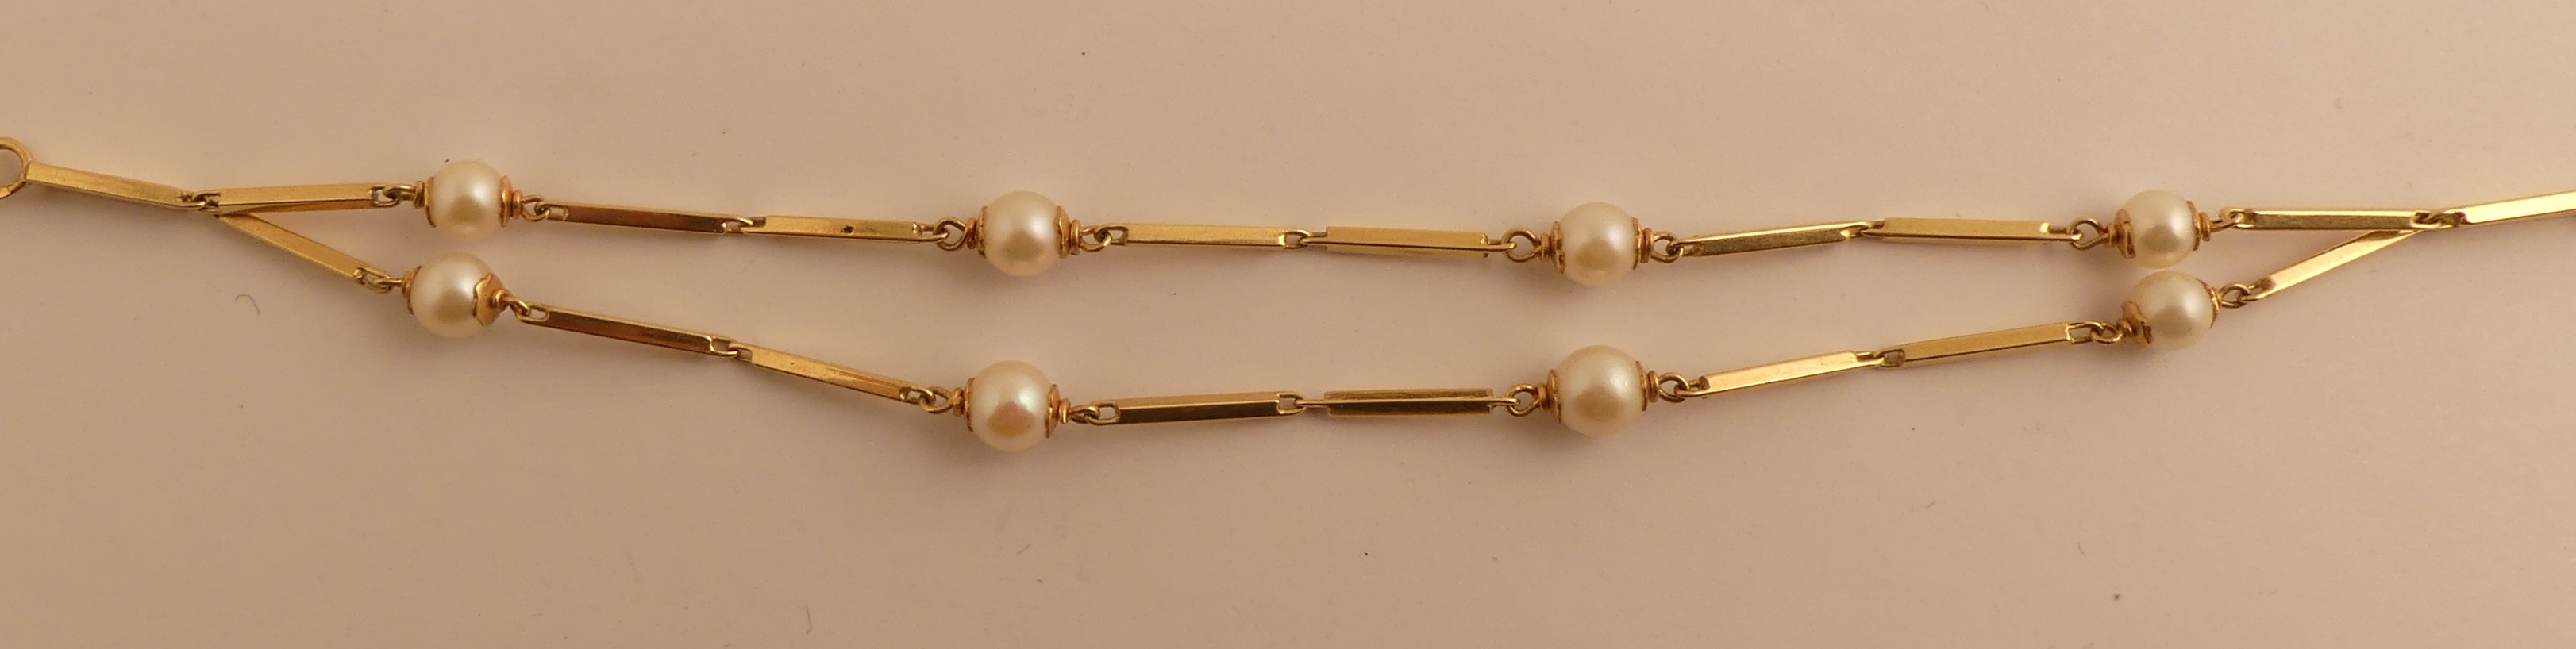 Bracelet en or jaune orné de perles. PB. 6.8g. -